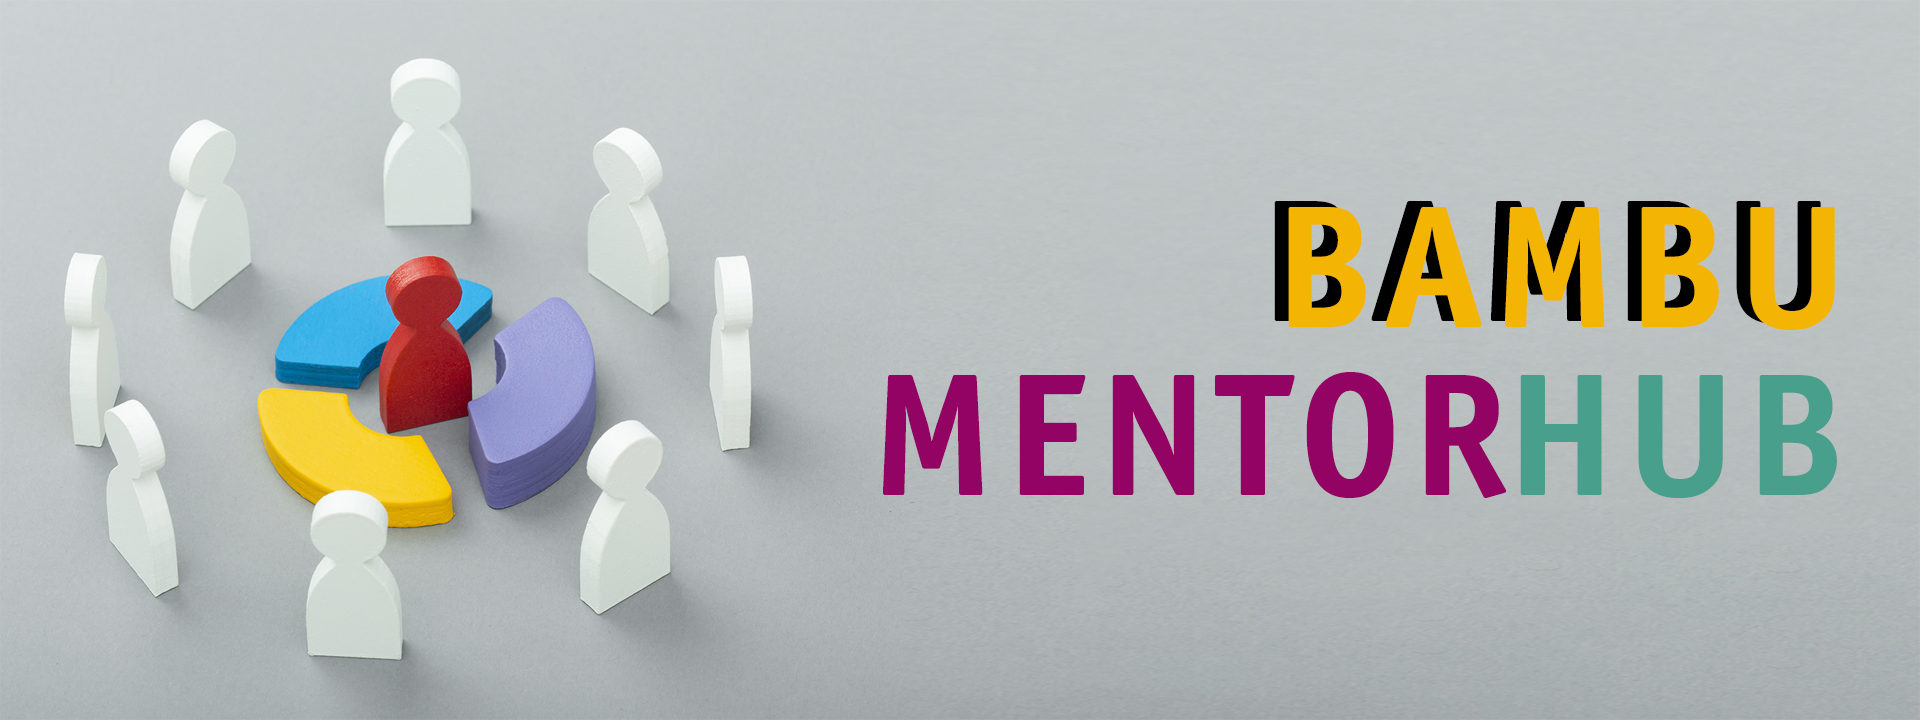 mentor_hub